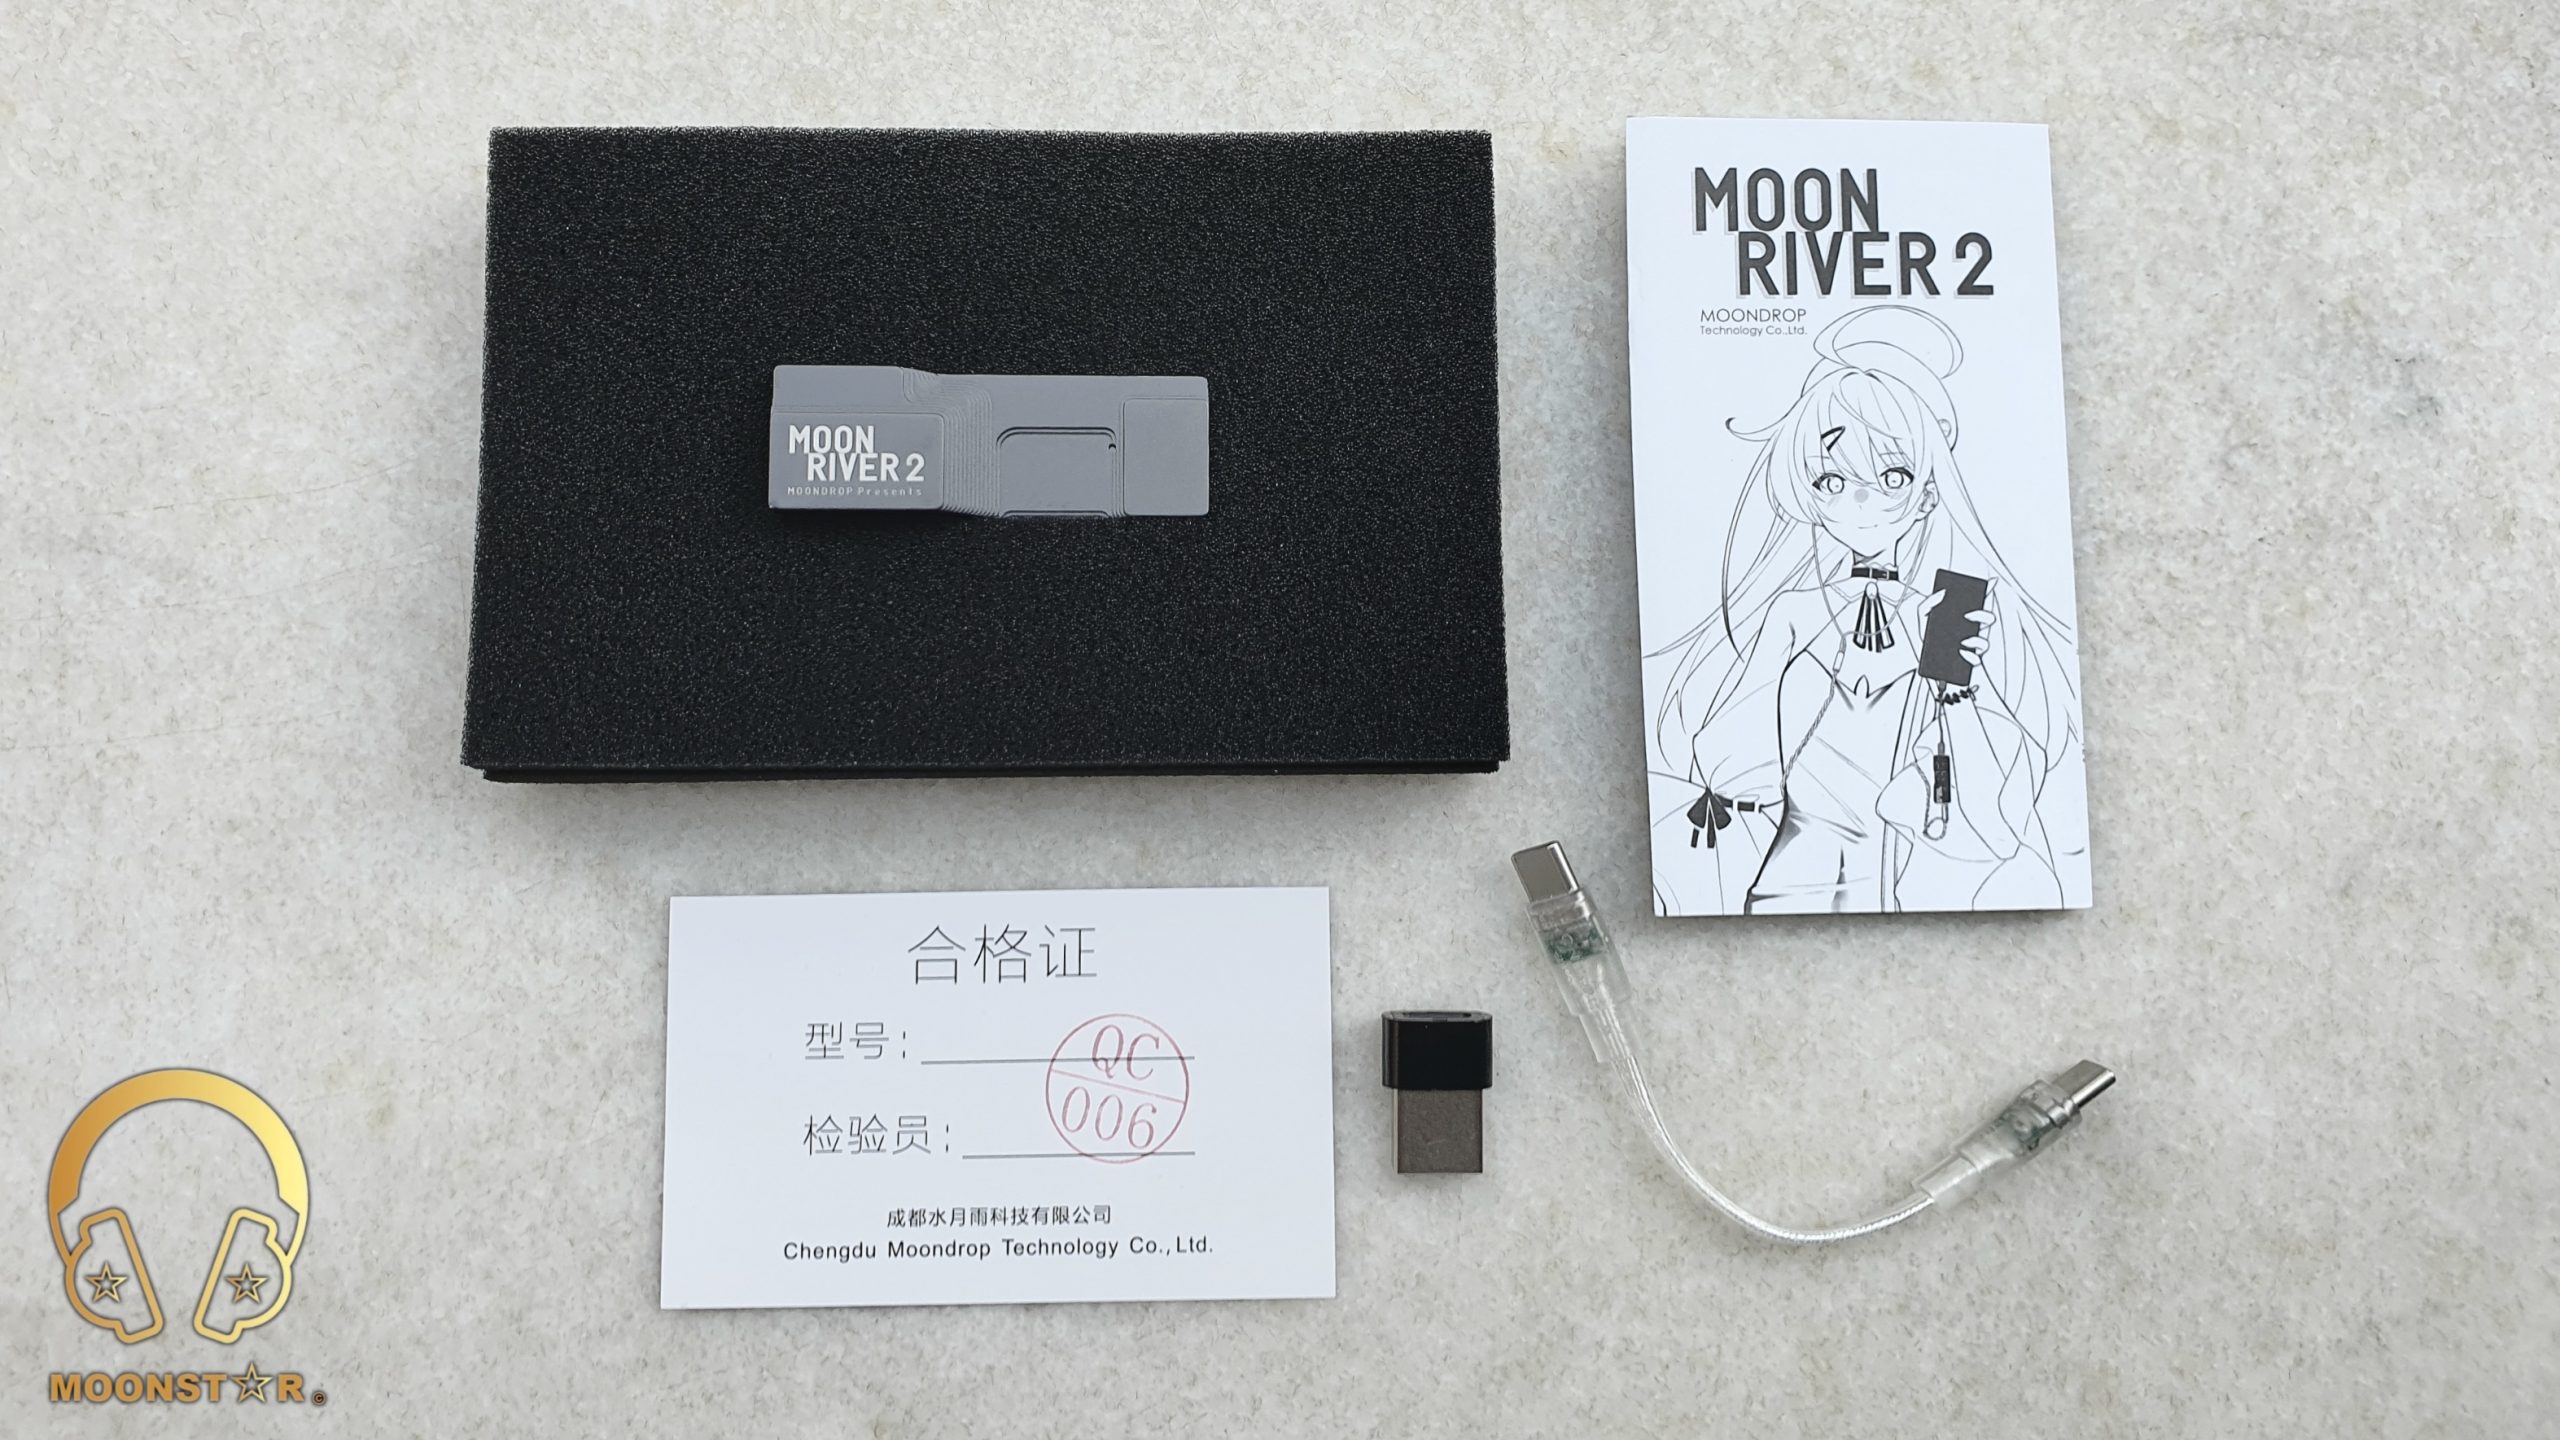 Moondrop Moonriver 2 Review » MOONSTAR Reviews